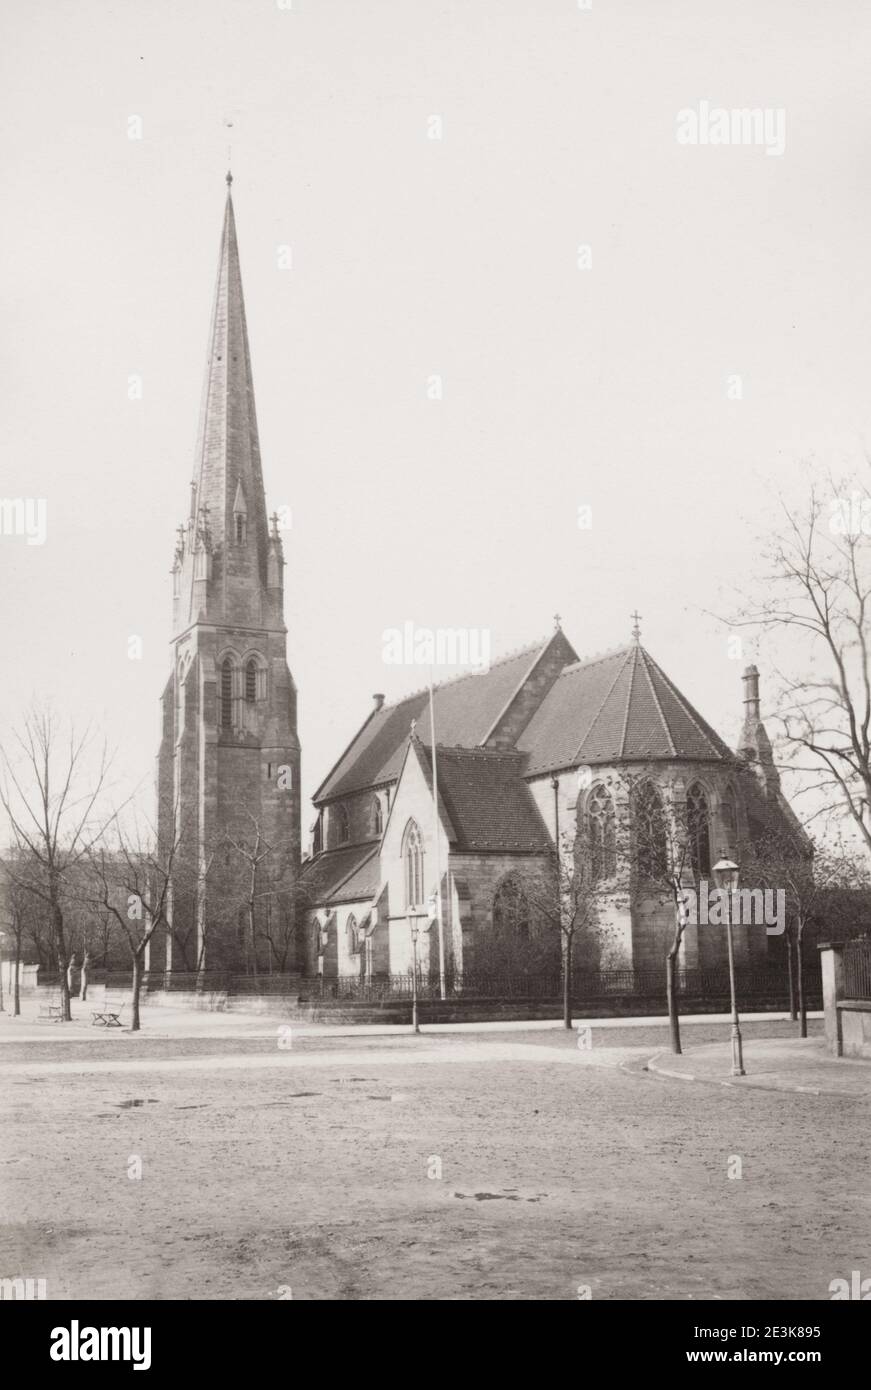 Fotografia d'epoca del XIX secolo: La Chiesa di tutti i Santi era una chiesa anglicana su Wiener Straße a Dresda. Era nel periodo dell'inizio inglese dell'architettura neogotica. La chiesa è bruciata nei bombardamenti di Dresda del 13 e 14 febbraio 1945. Foto Stock